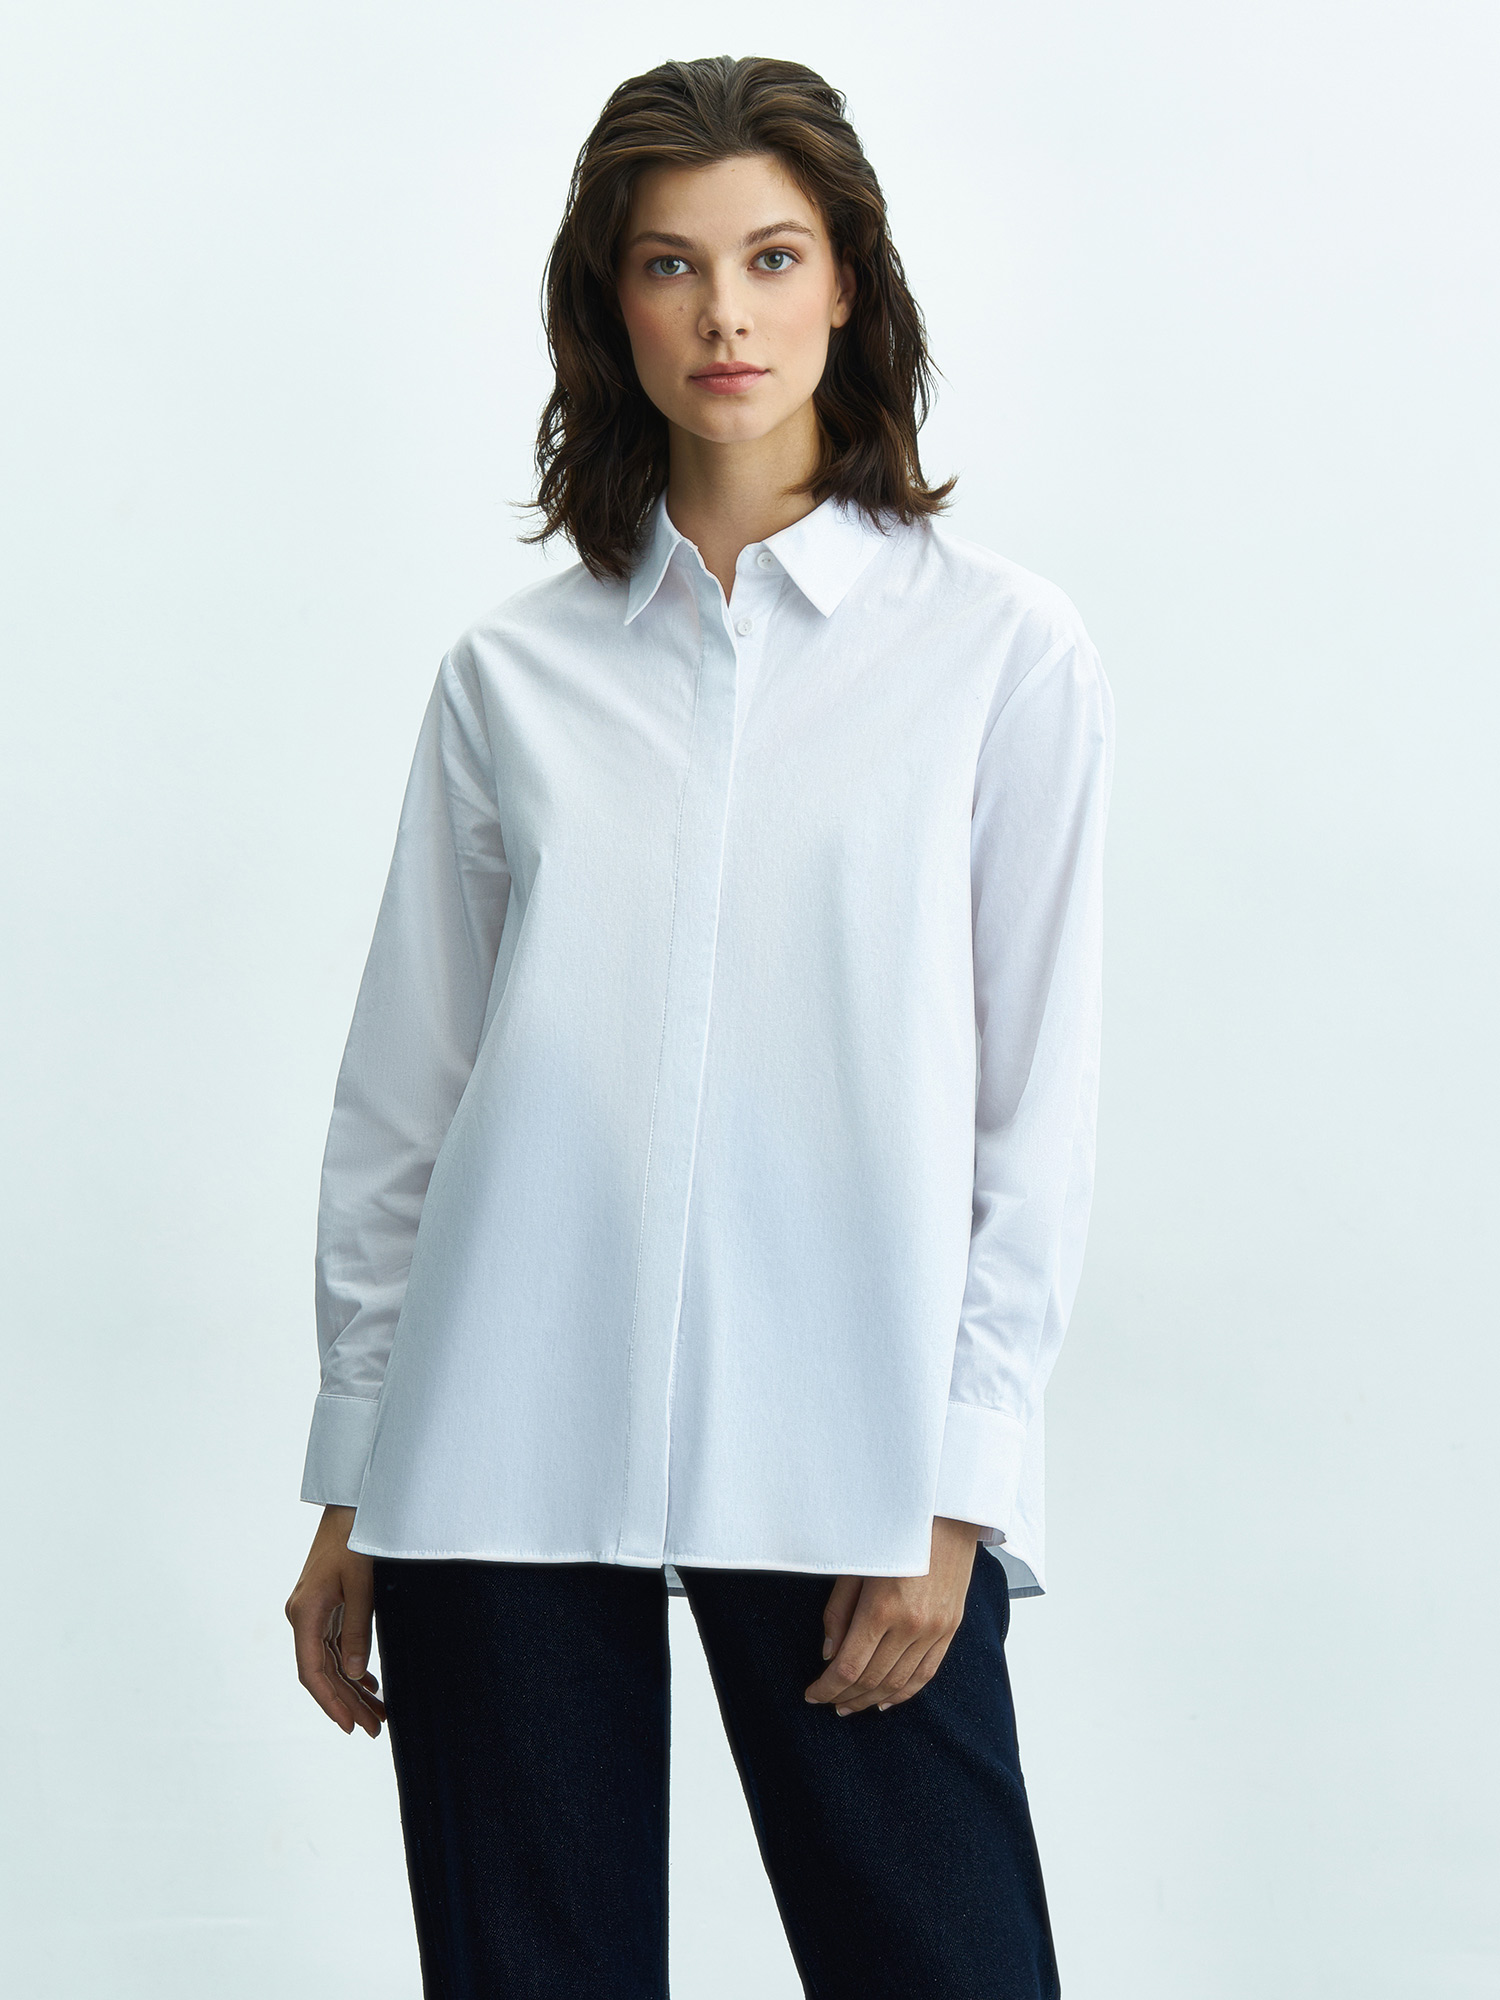 Белая рубашка из 100% хлопка. Изображение 1